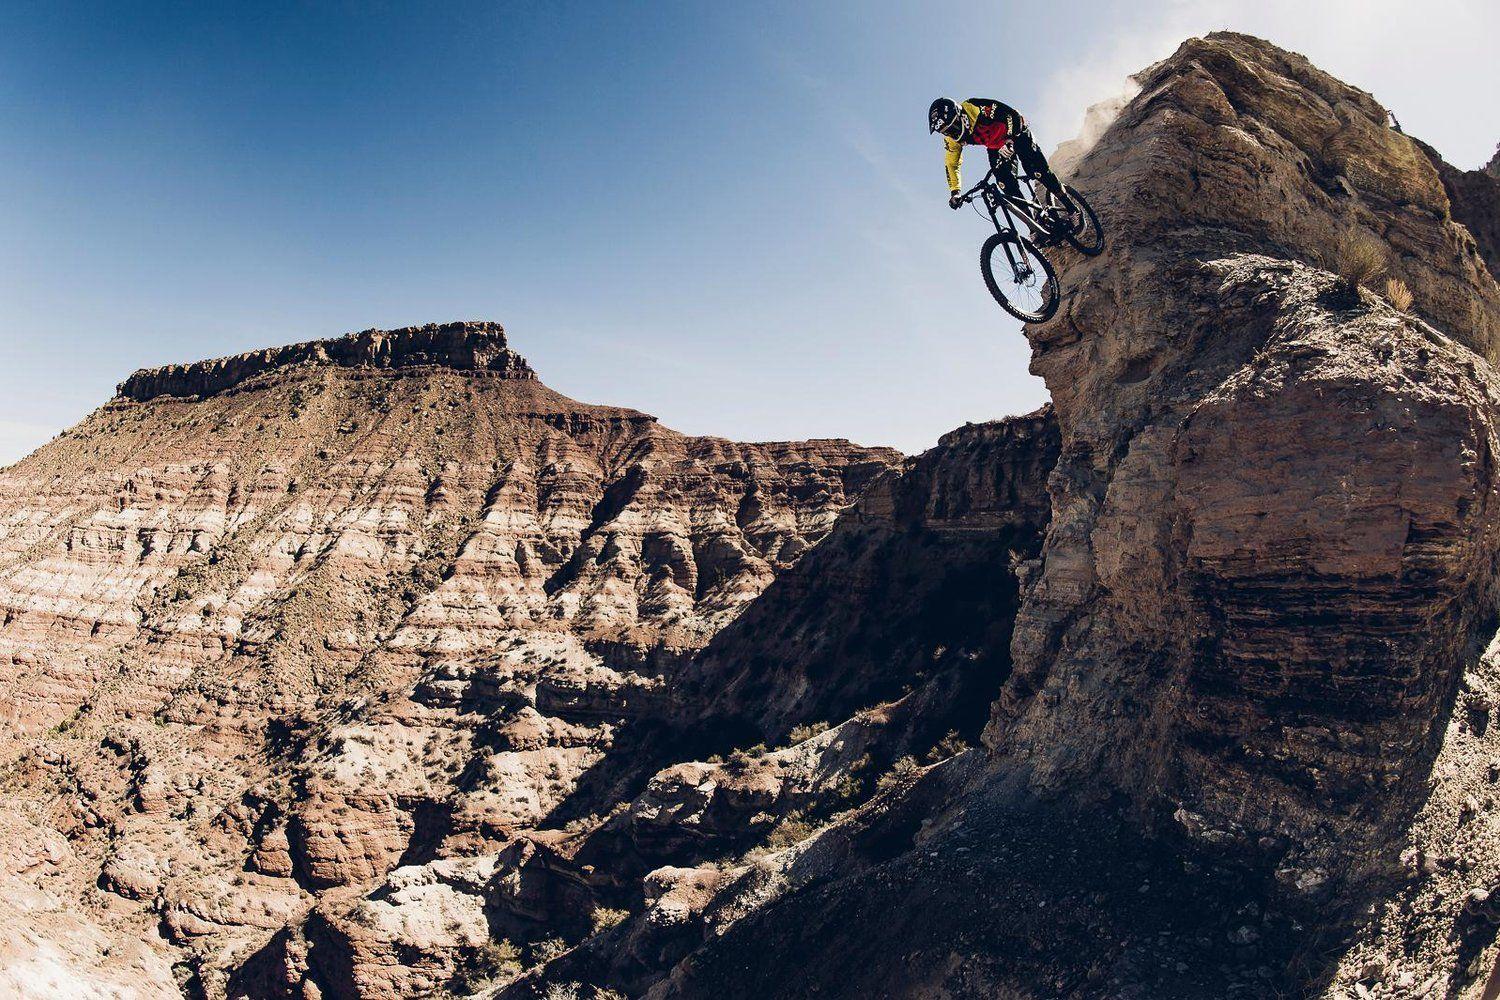 Red Bull Ram: Craziest Mountain Bike Photo